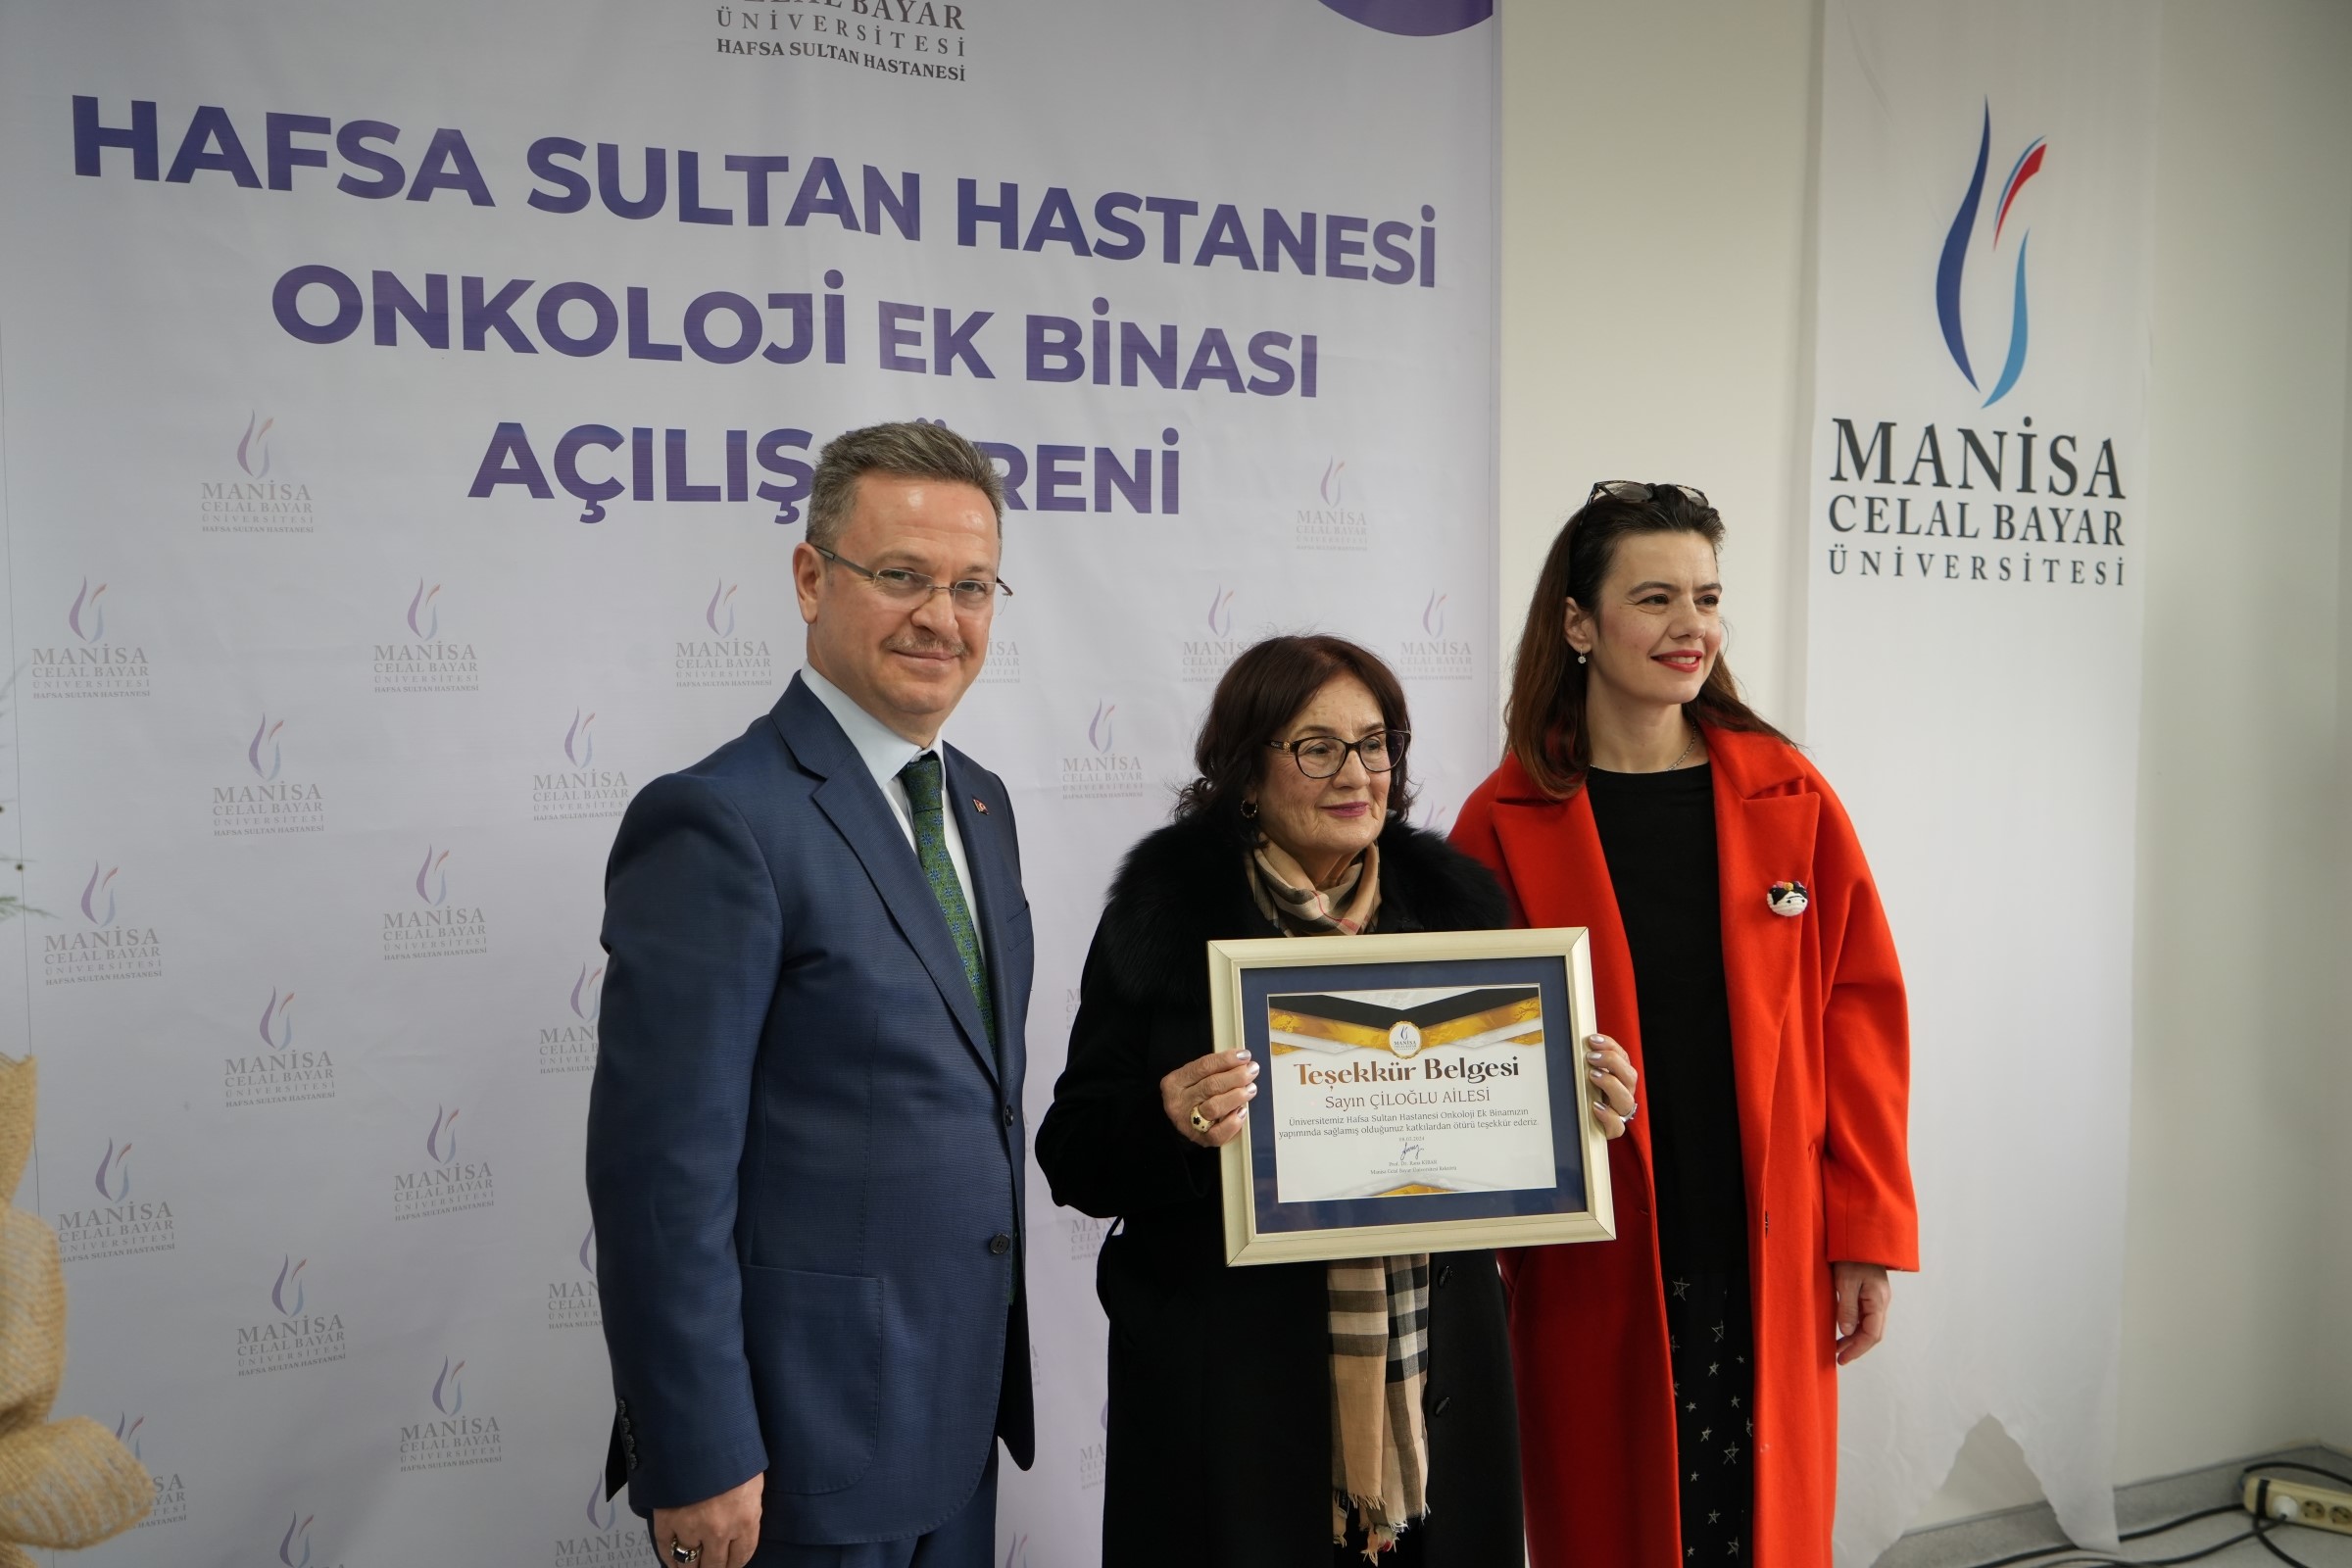 Manisa Cbü Hafsa Sultan Hastanesi Onkoloji Ek Binası Açıldı (3)